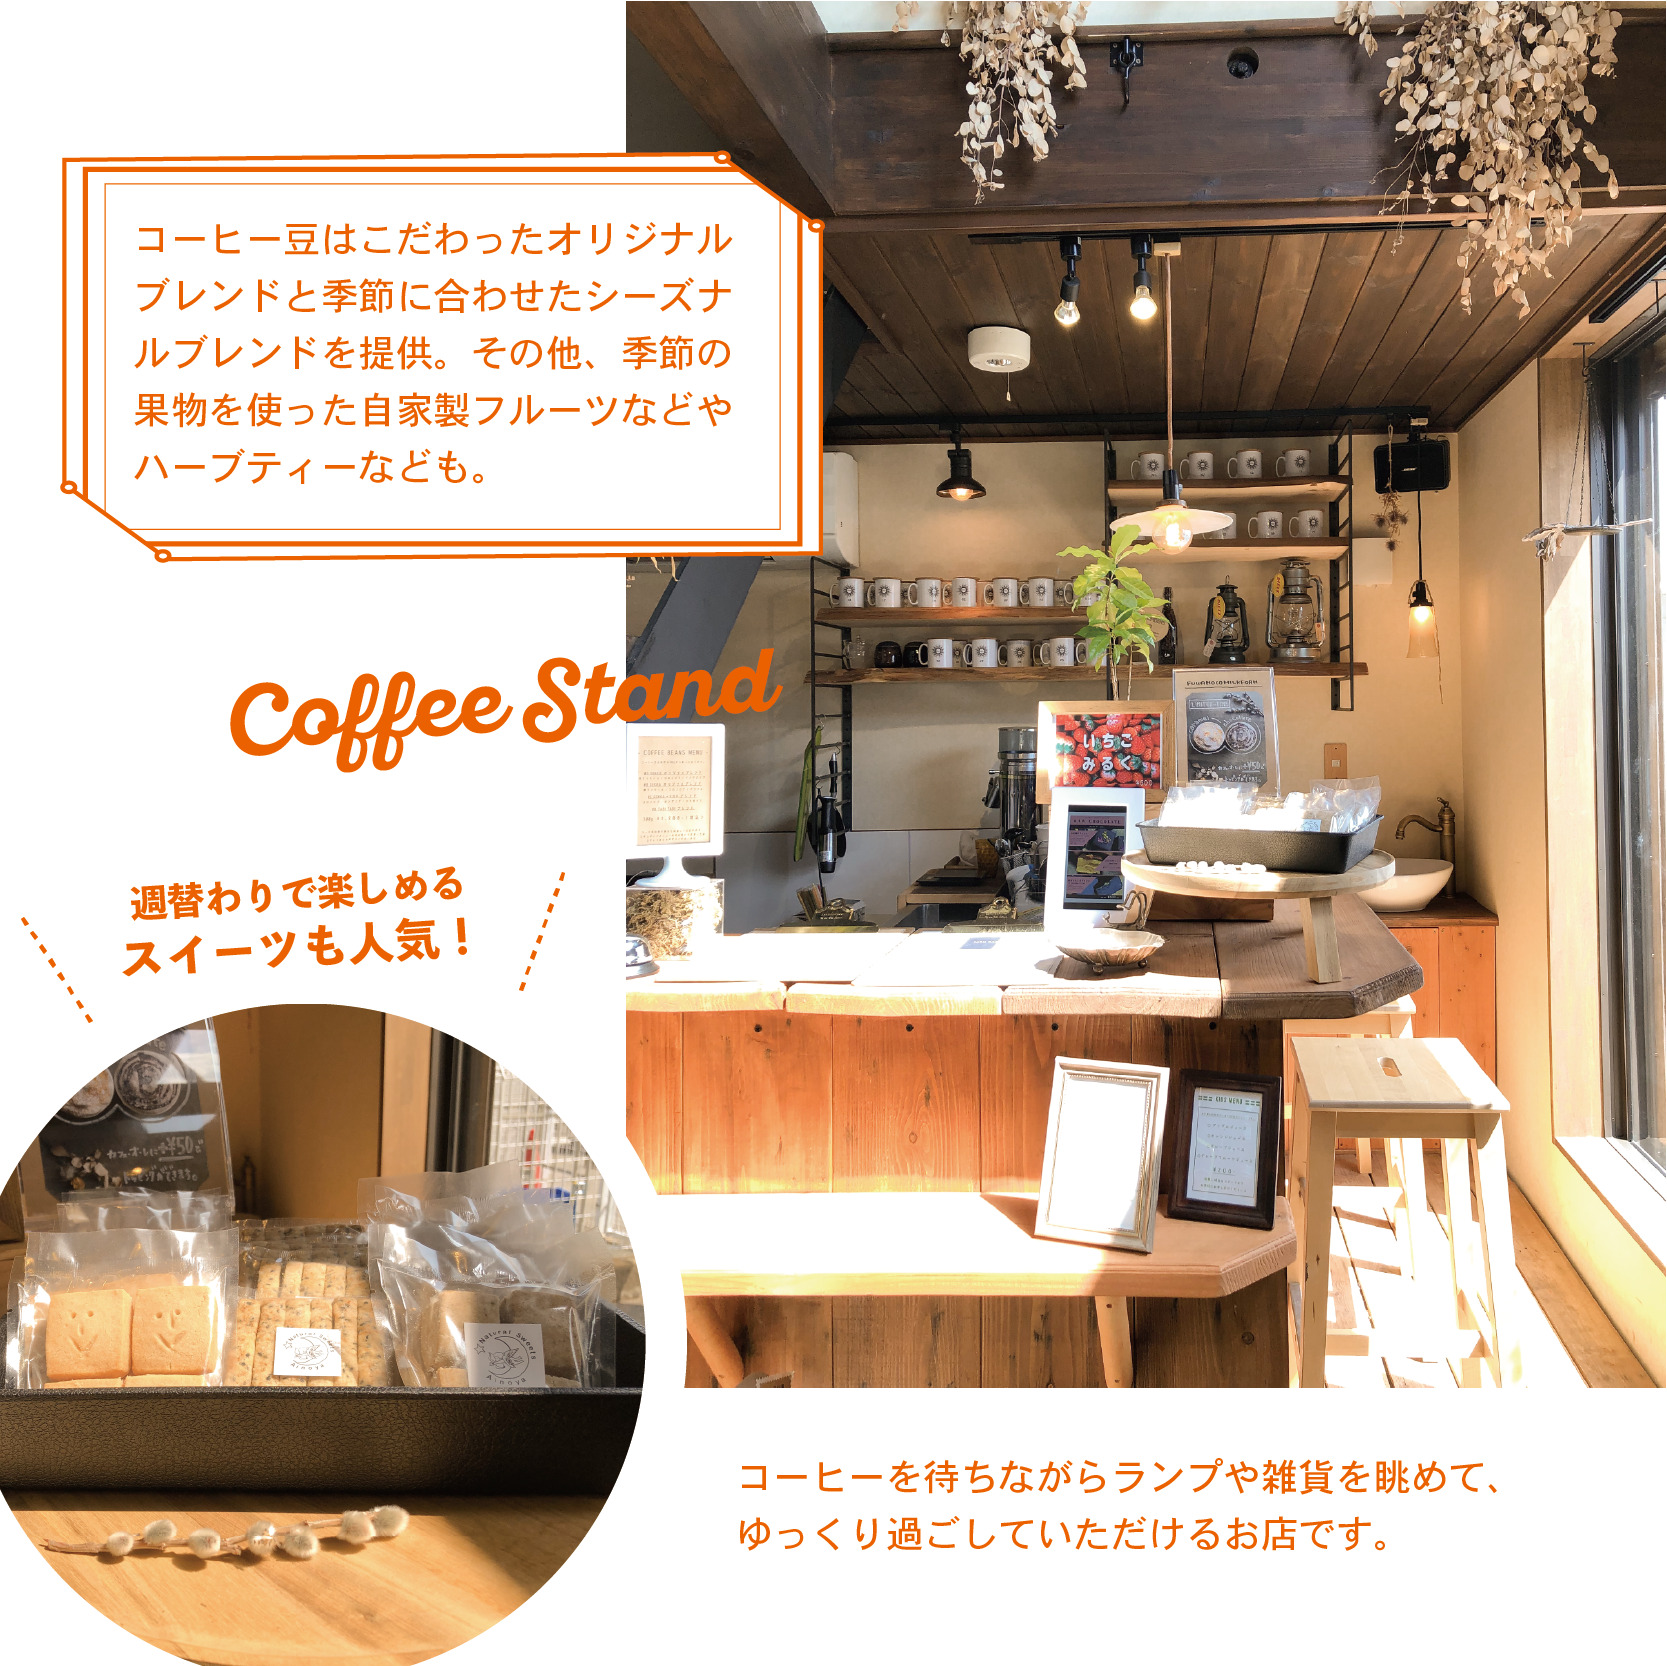 オリジナルコーヒーが楽しめる﻿ インテリア雑貨店【GEKKA】﻿